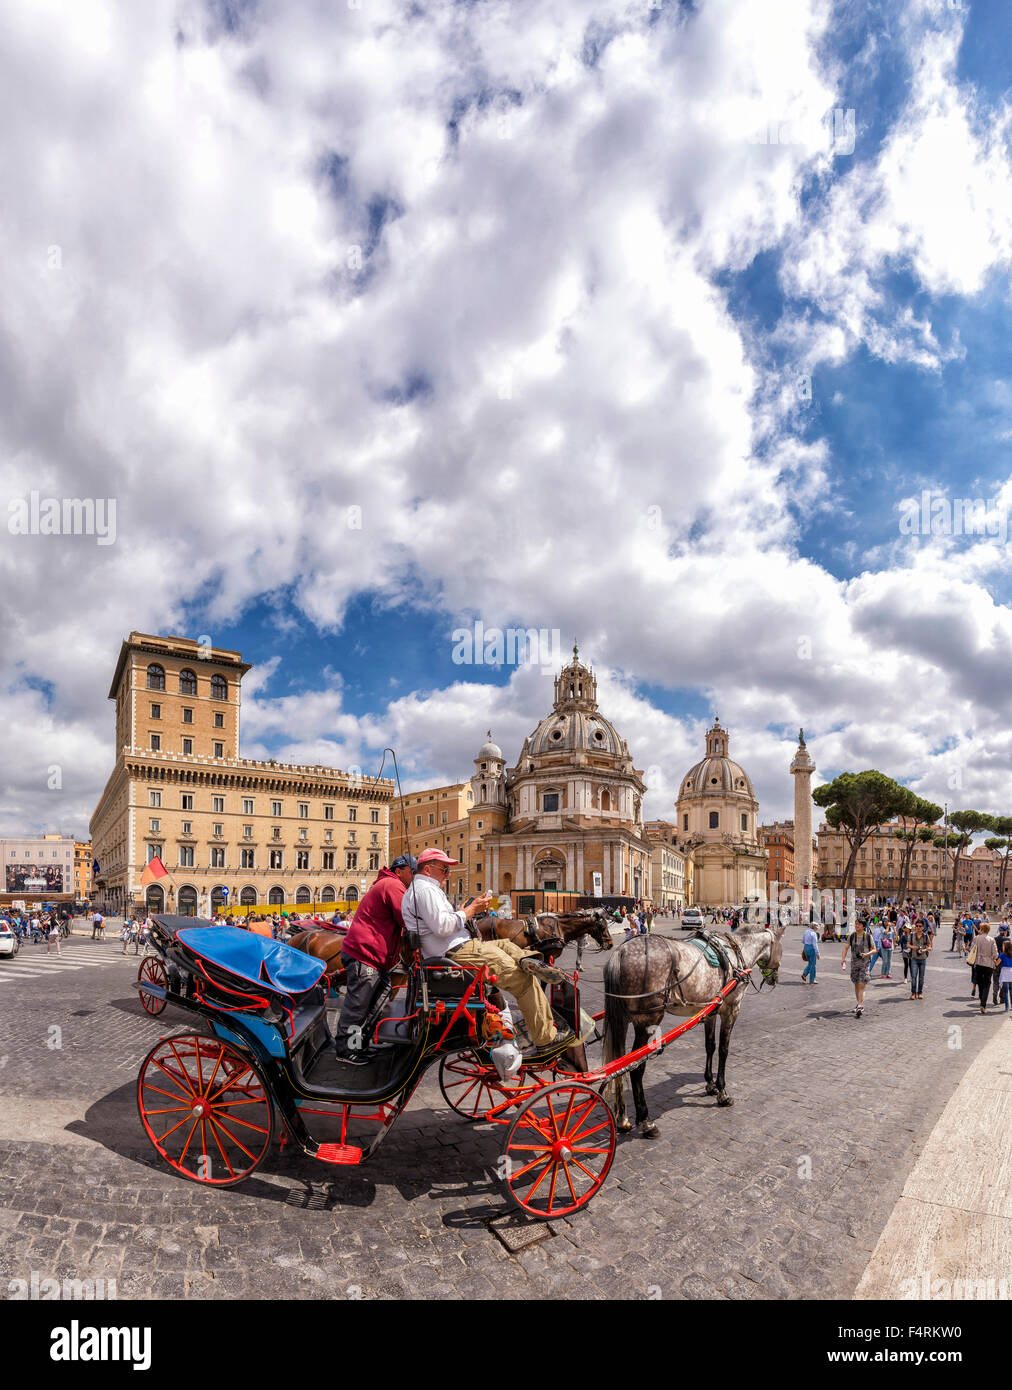 Italy, Europe, Lazio, Rome, Roma, city, village, spring, people, Horse, carriage, Piazza della Madonna di Loretto Stock Photo